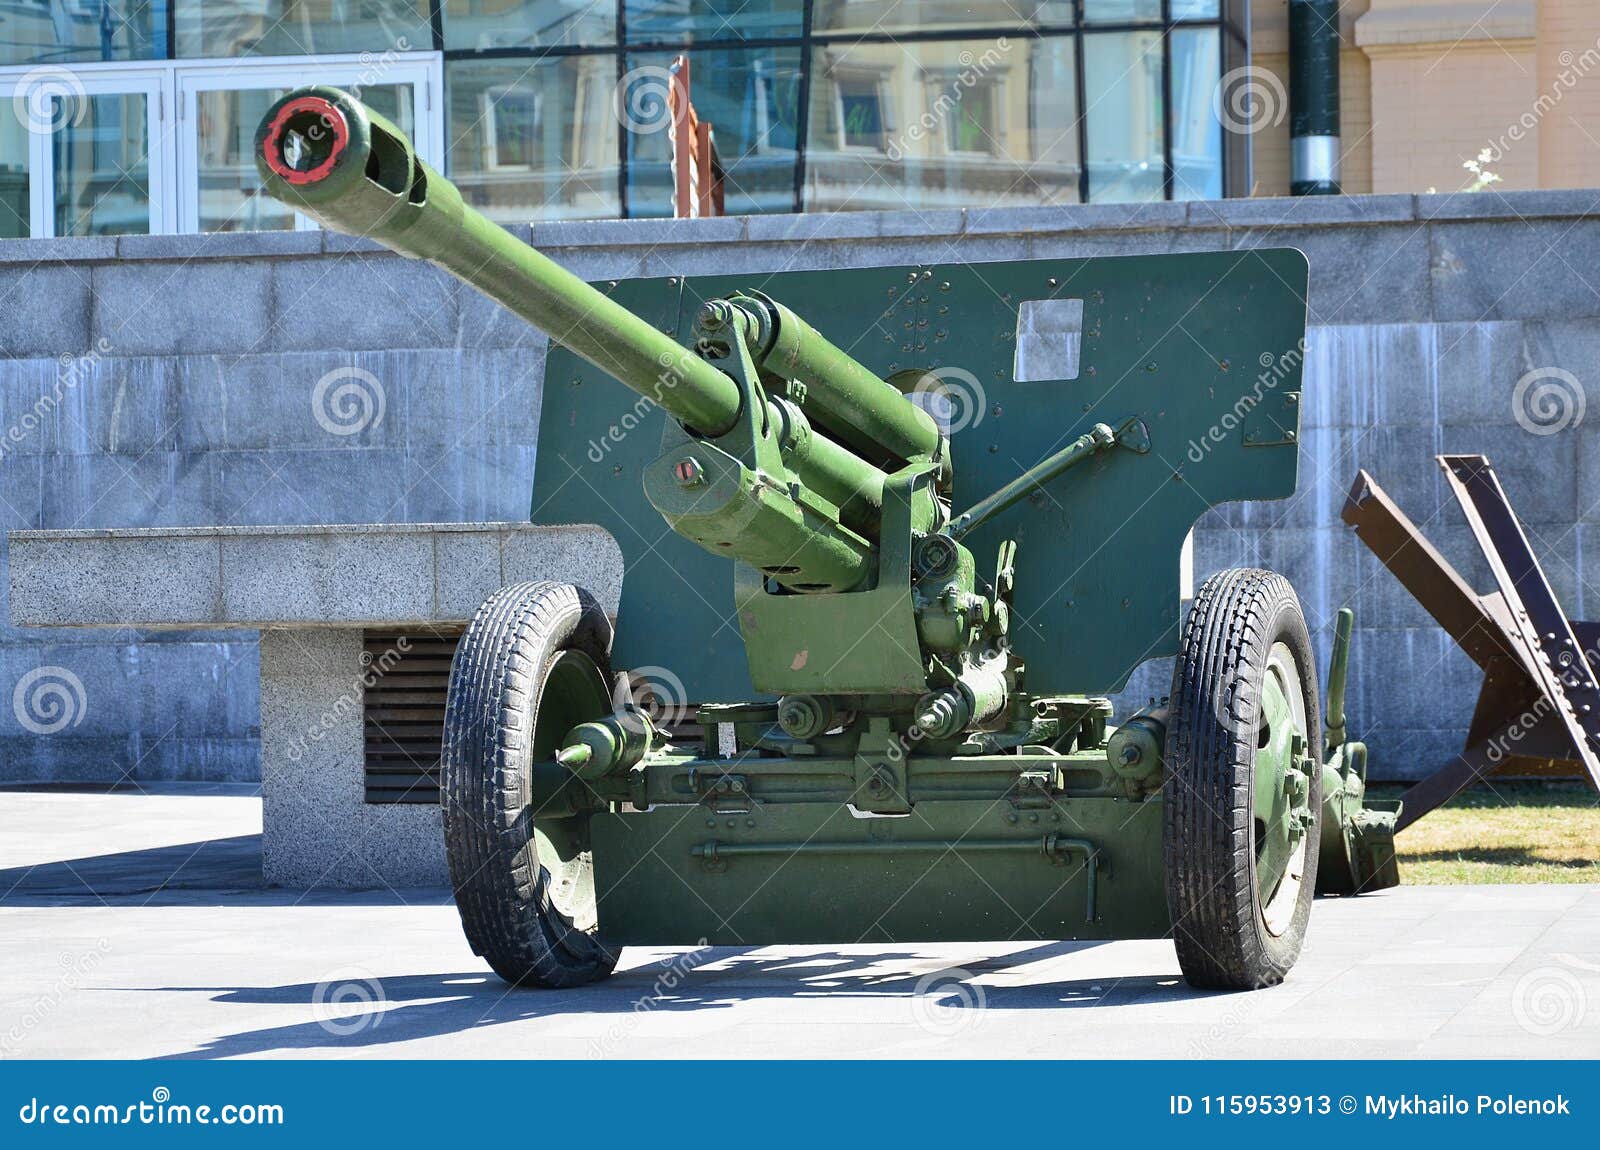 Foto De Un Arma Portátil De La Unión Soviética De La Segunda Guerra Mundial,  Pintada En Colo Verde Oscuro Imagen de archivo - Imagen de militar, oscuro:  115953913